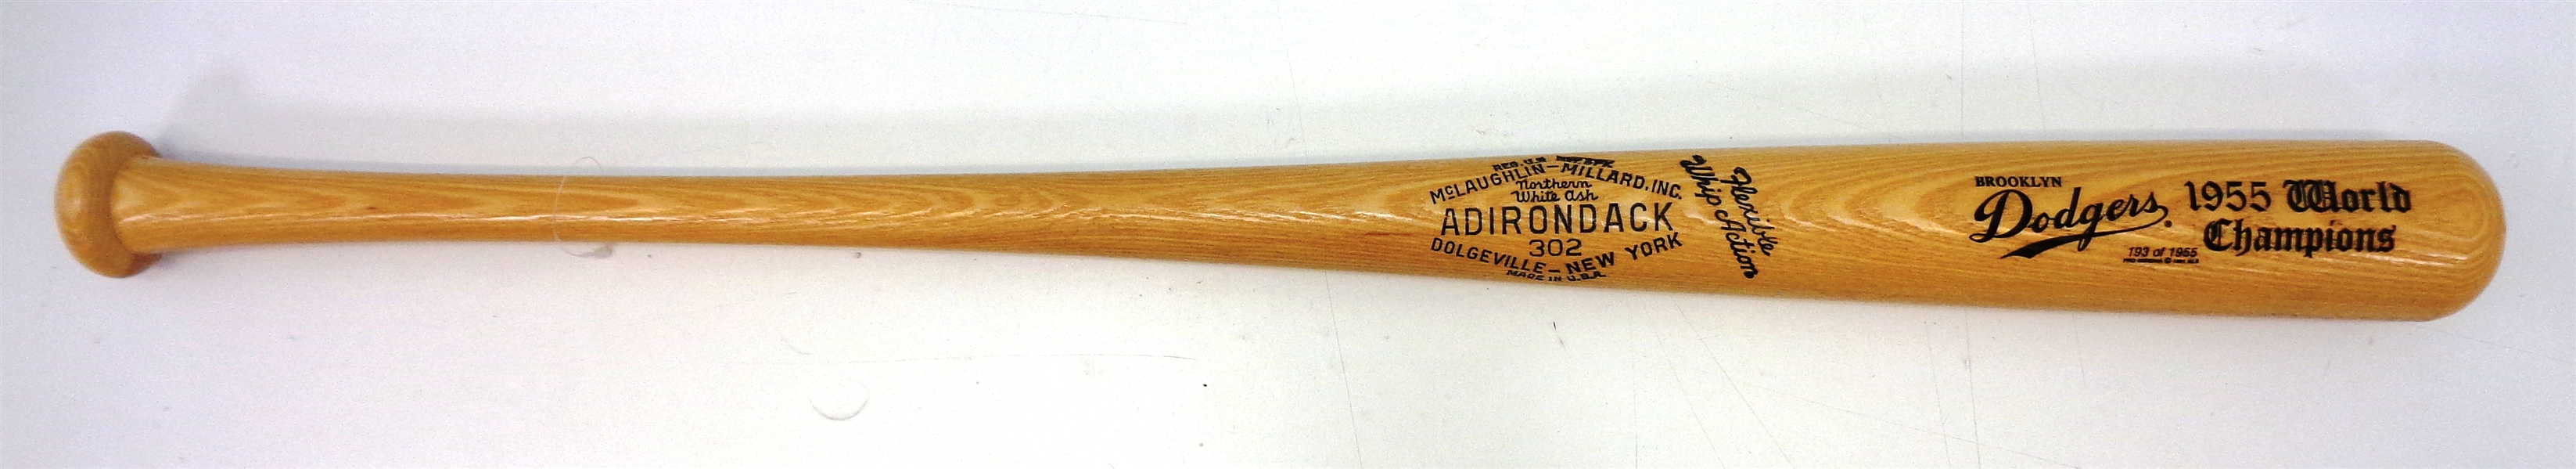 1955 Brooklyn Dodgers World Champions Bat